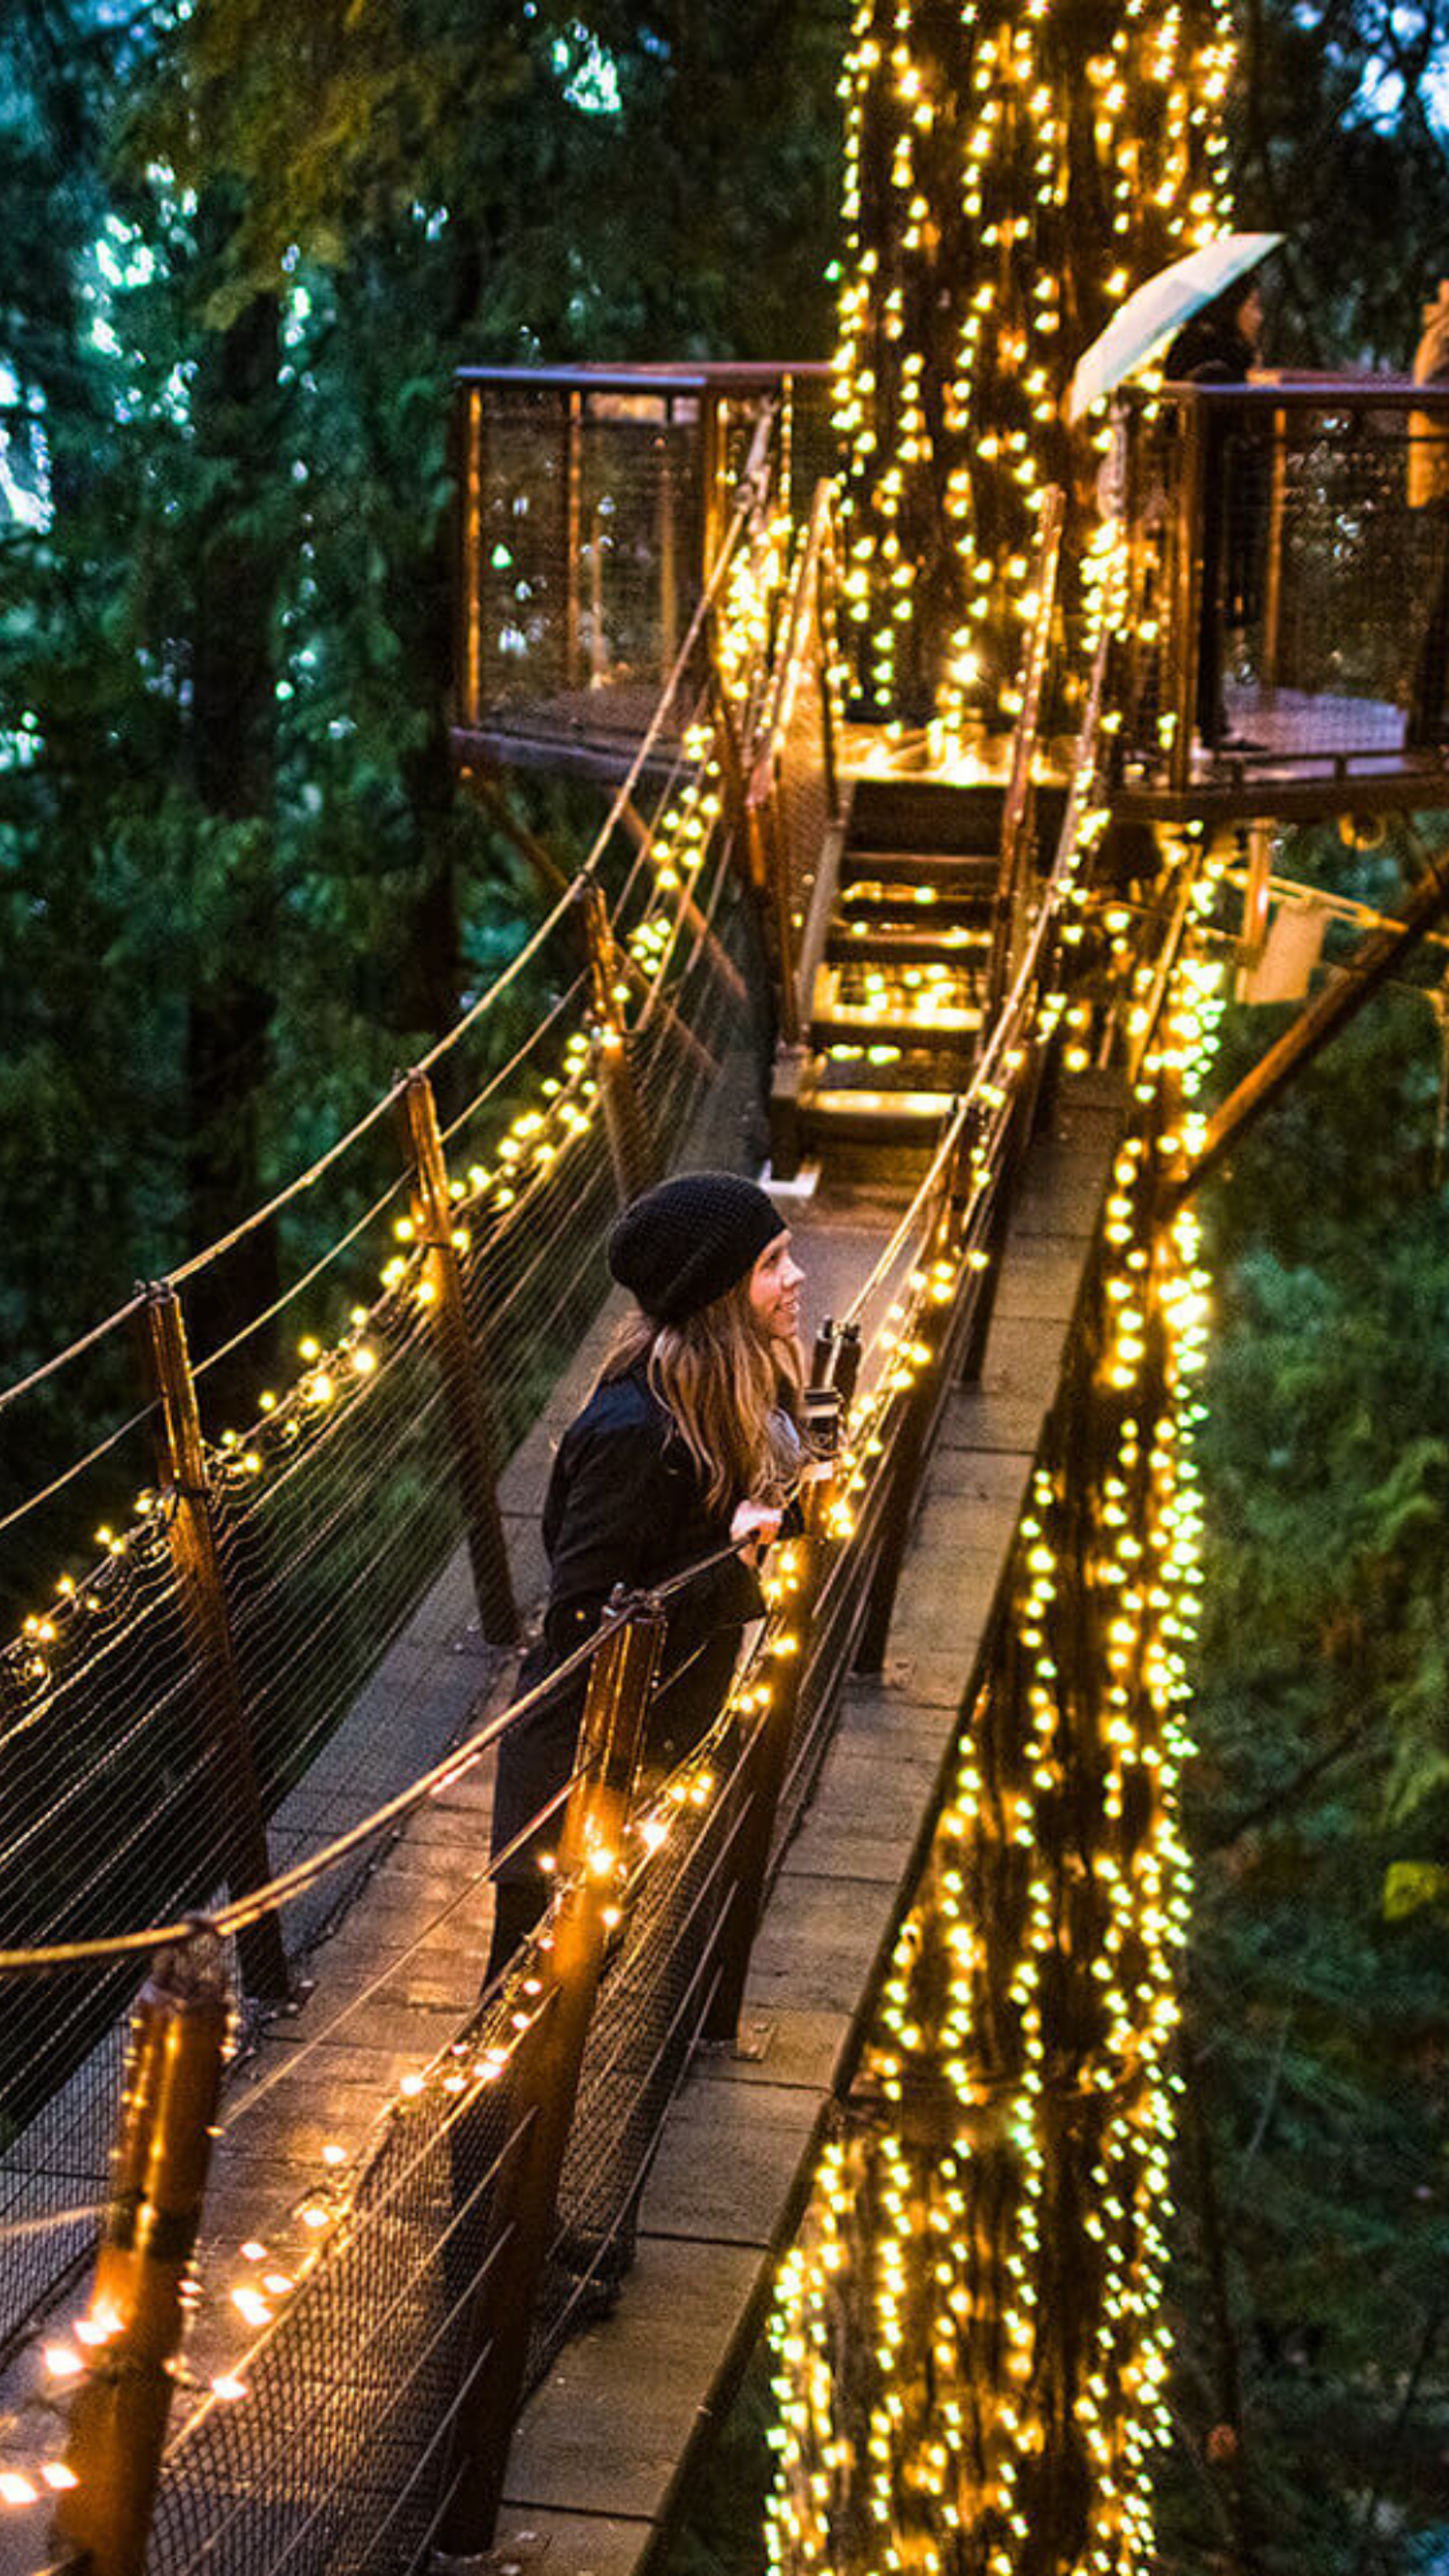 Une femme profite d'une soirée magique sur un pont suspendu magnifiquement illuminé, entouré de forêt dense.